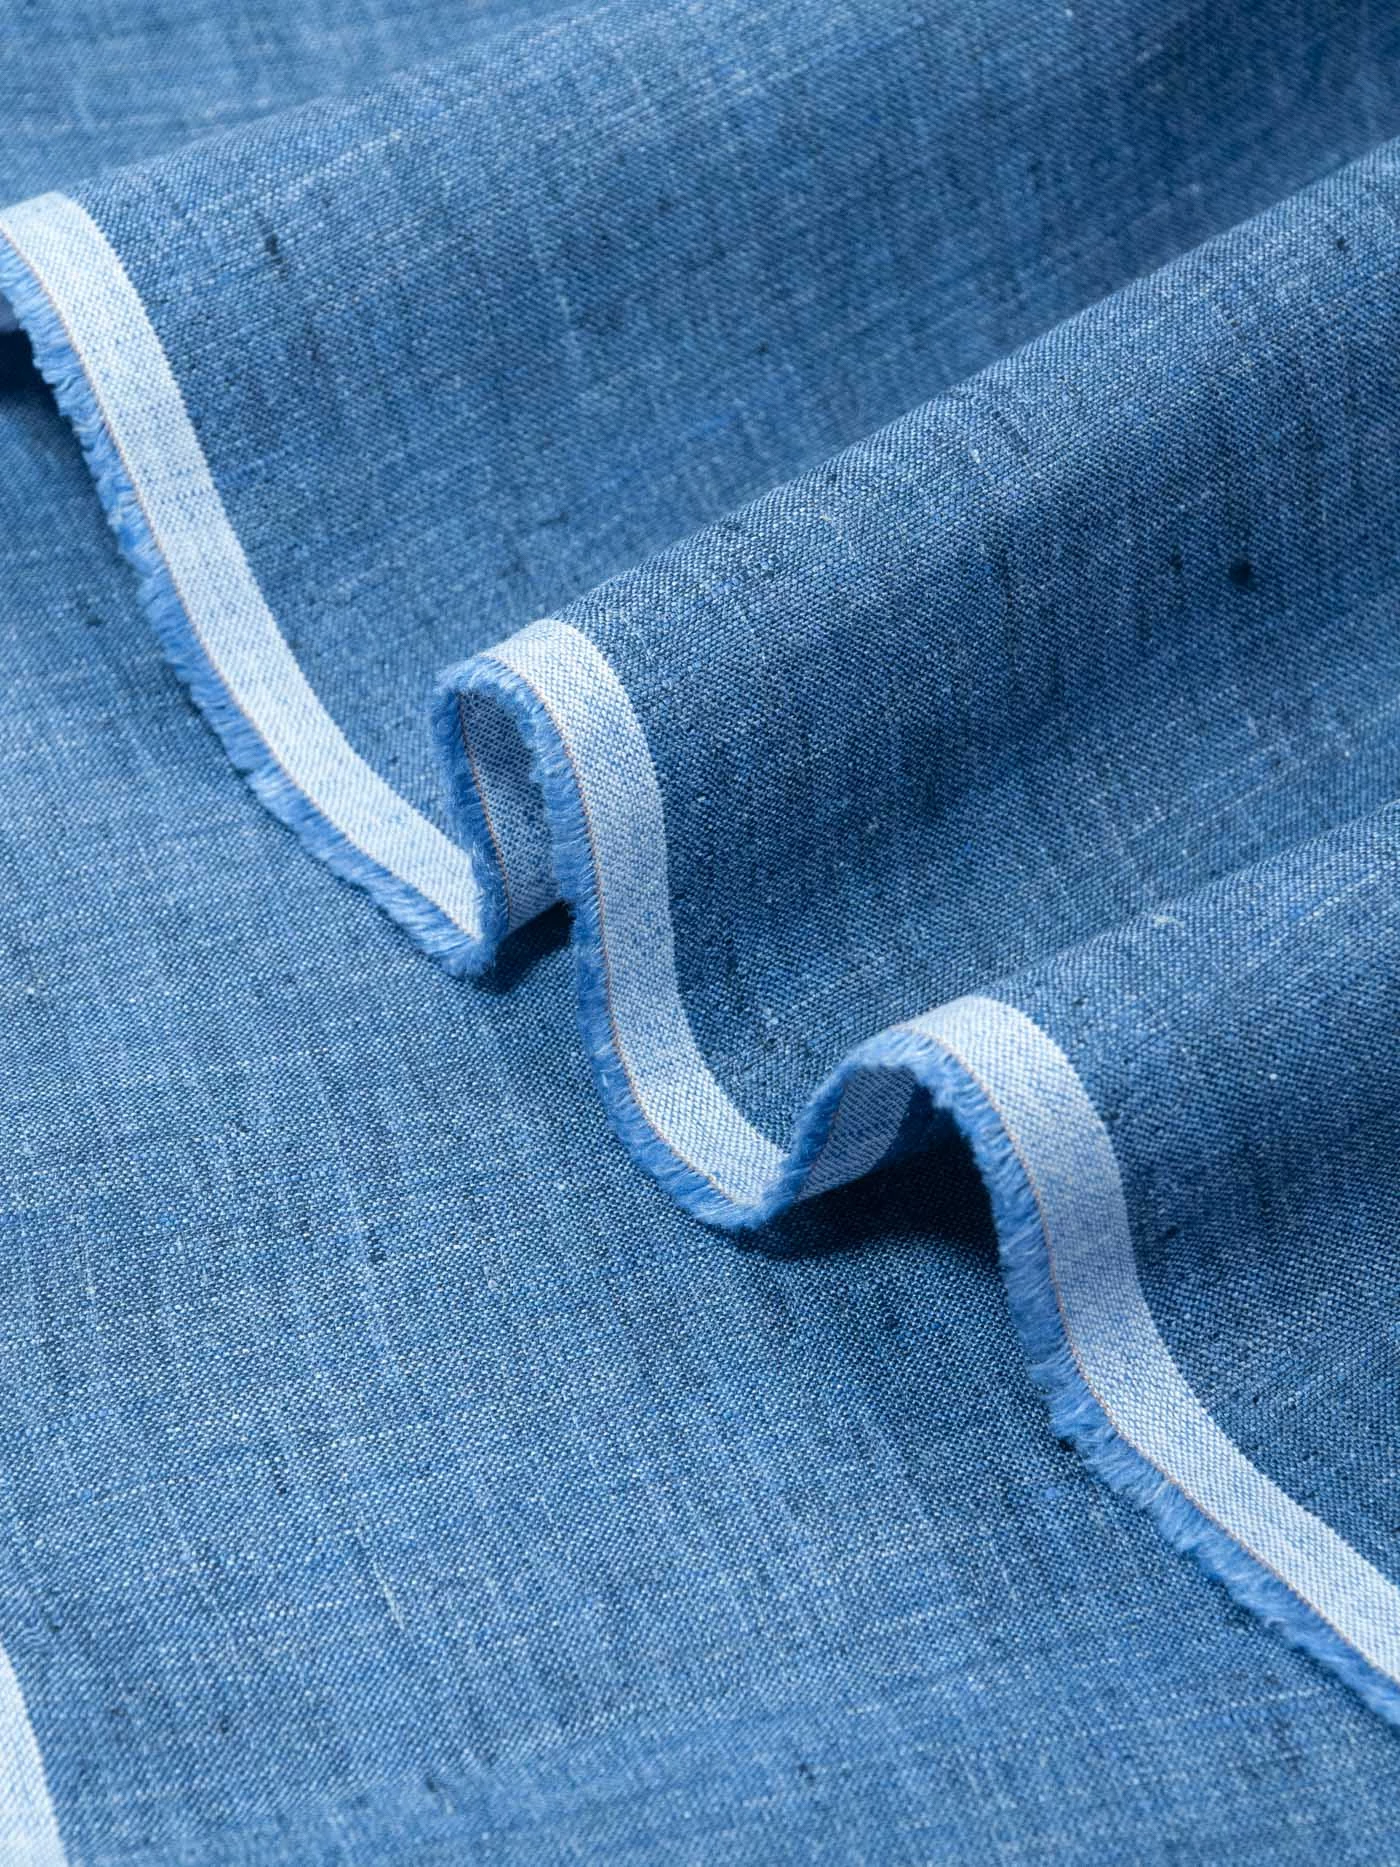 Лен Loro Piana, цвет синий джинсовый меланж, 1042210 150см купить в Москве- цена 3195.00 руб.